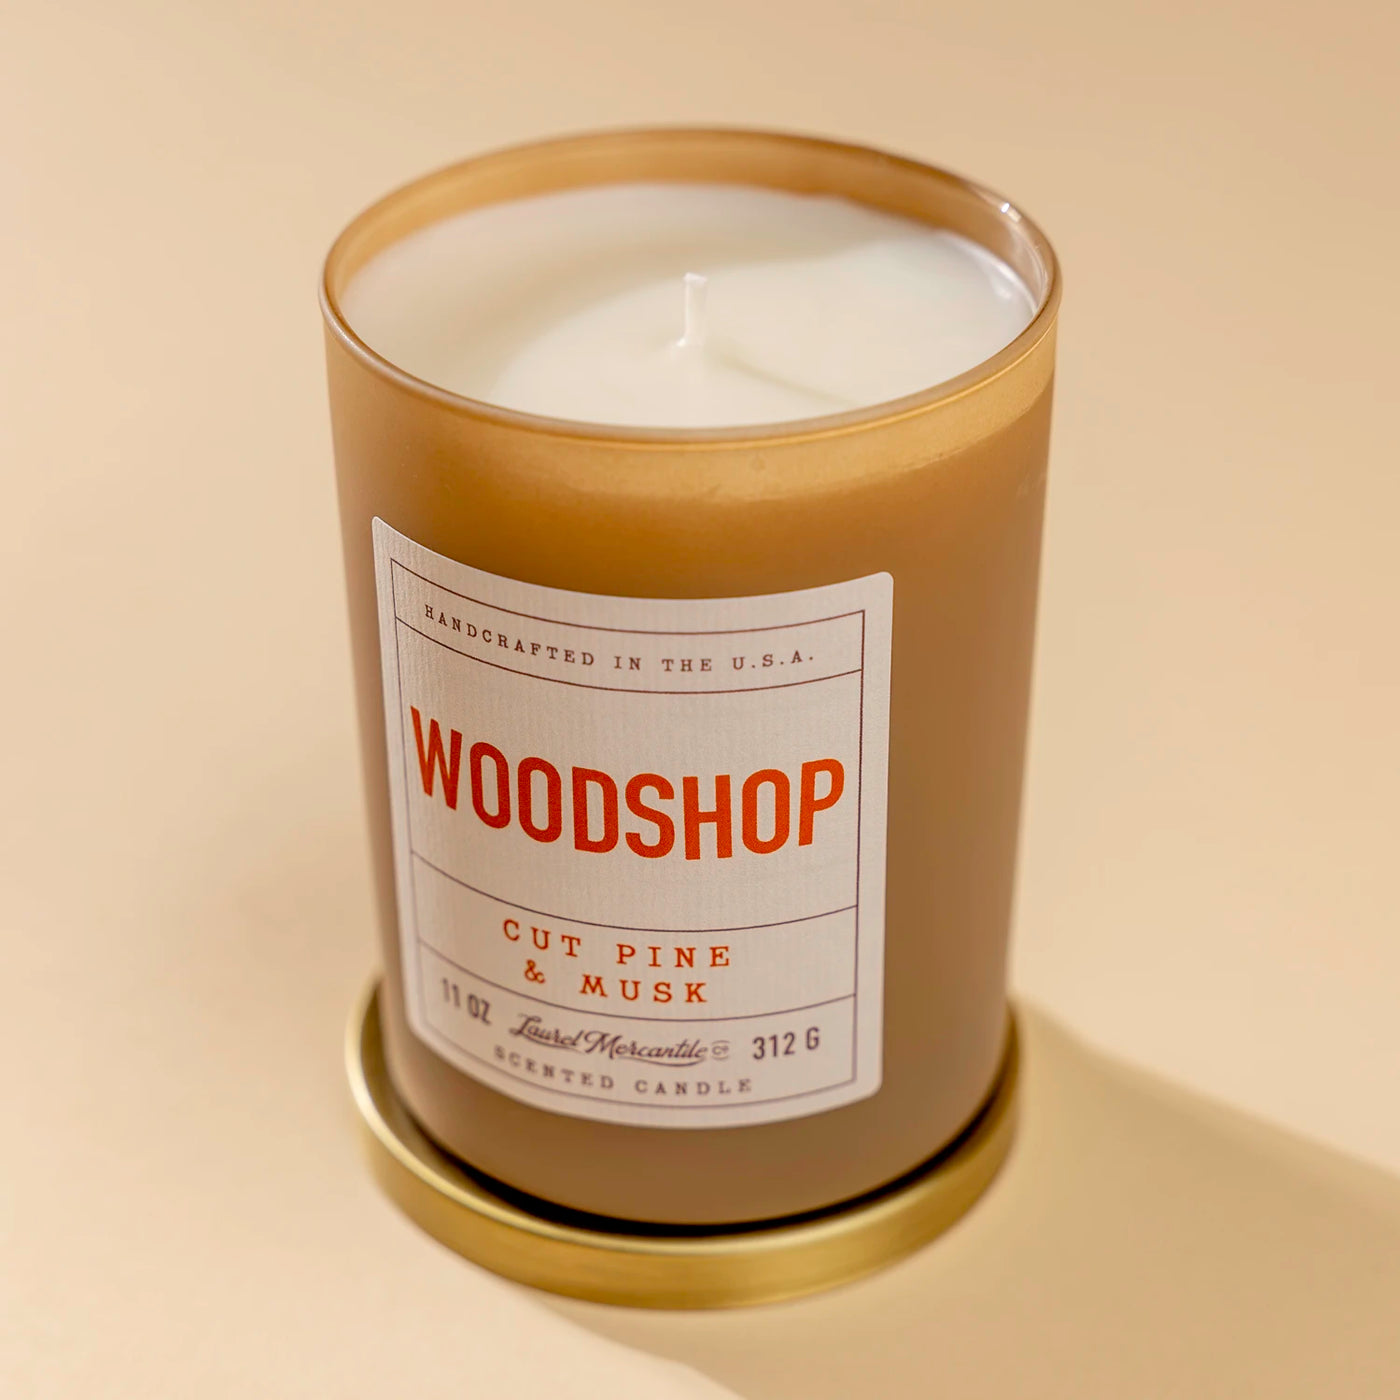 Woodshop Candle